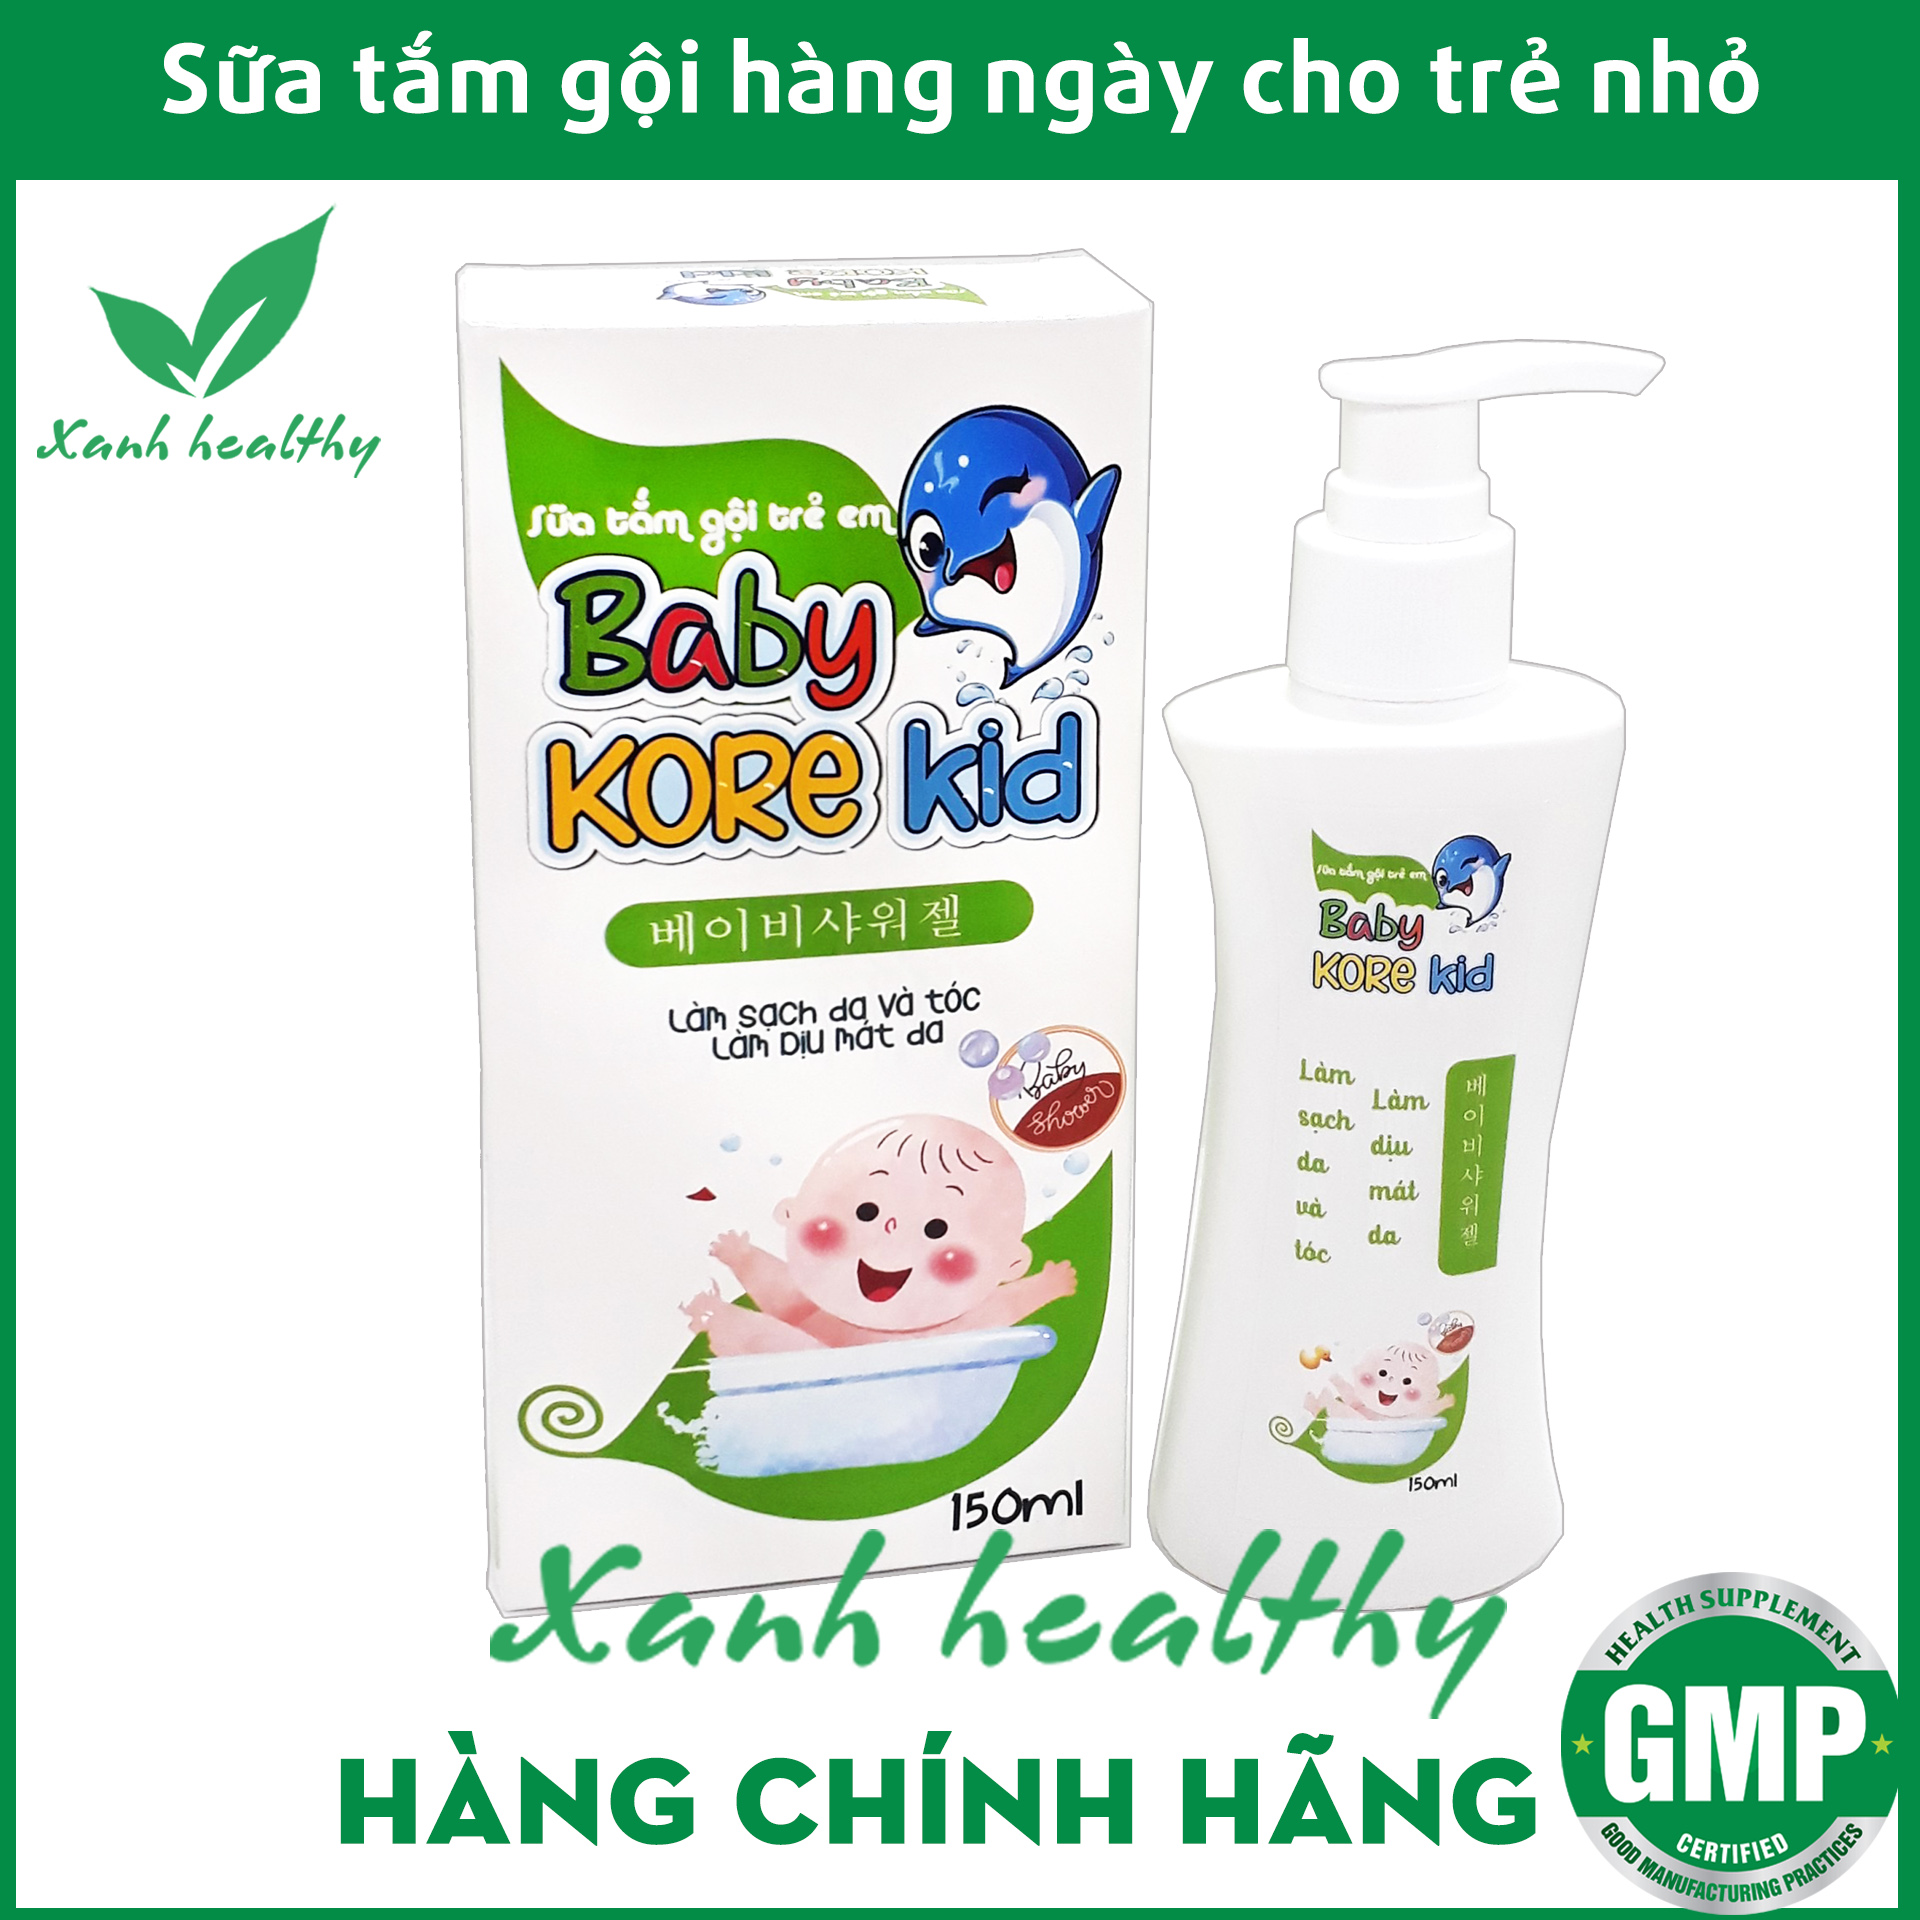 Sữa tắm gội Baby Kore kid cho bé - Thành phần an toàn cho làn da bé